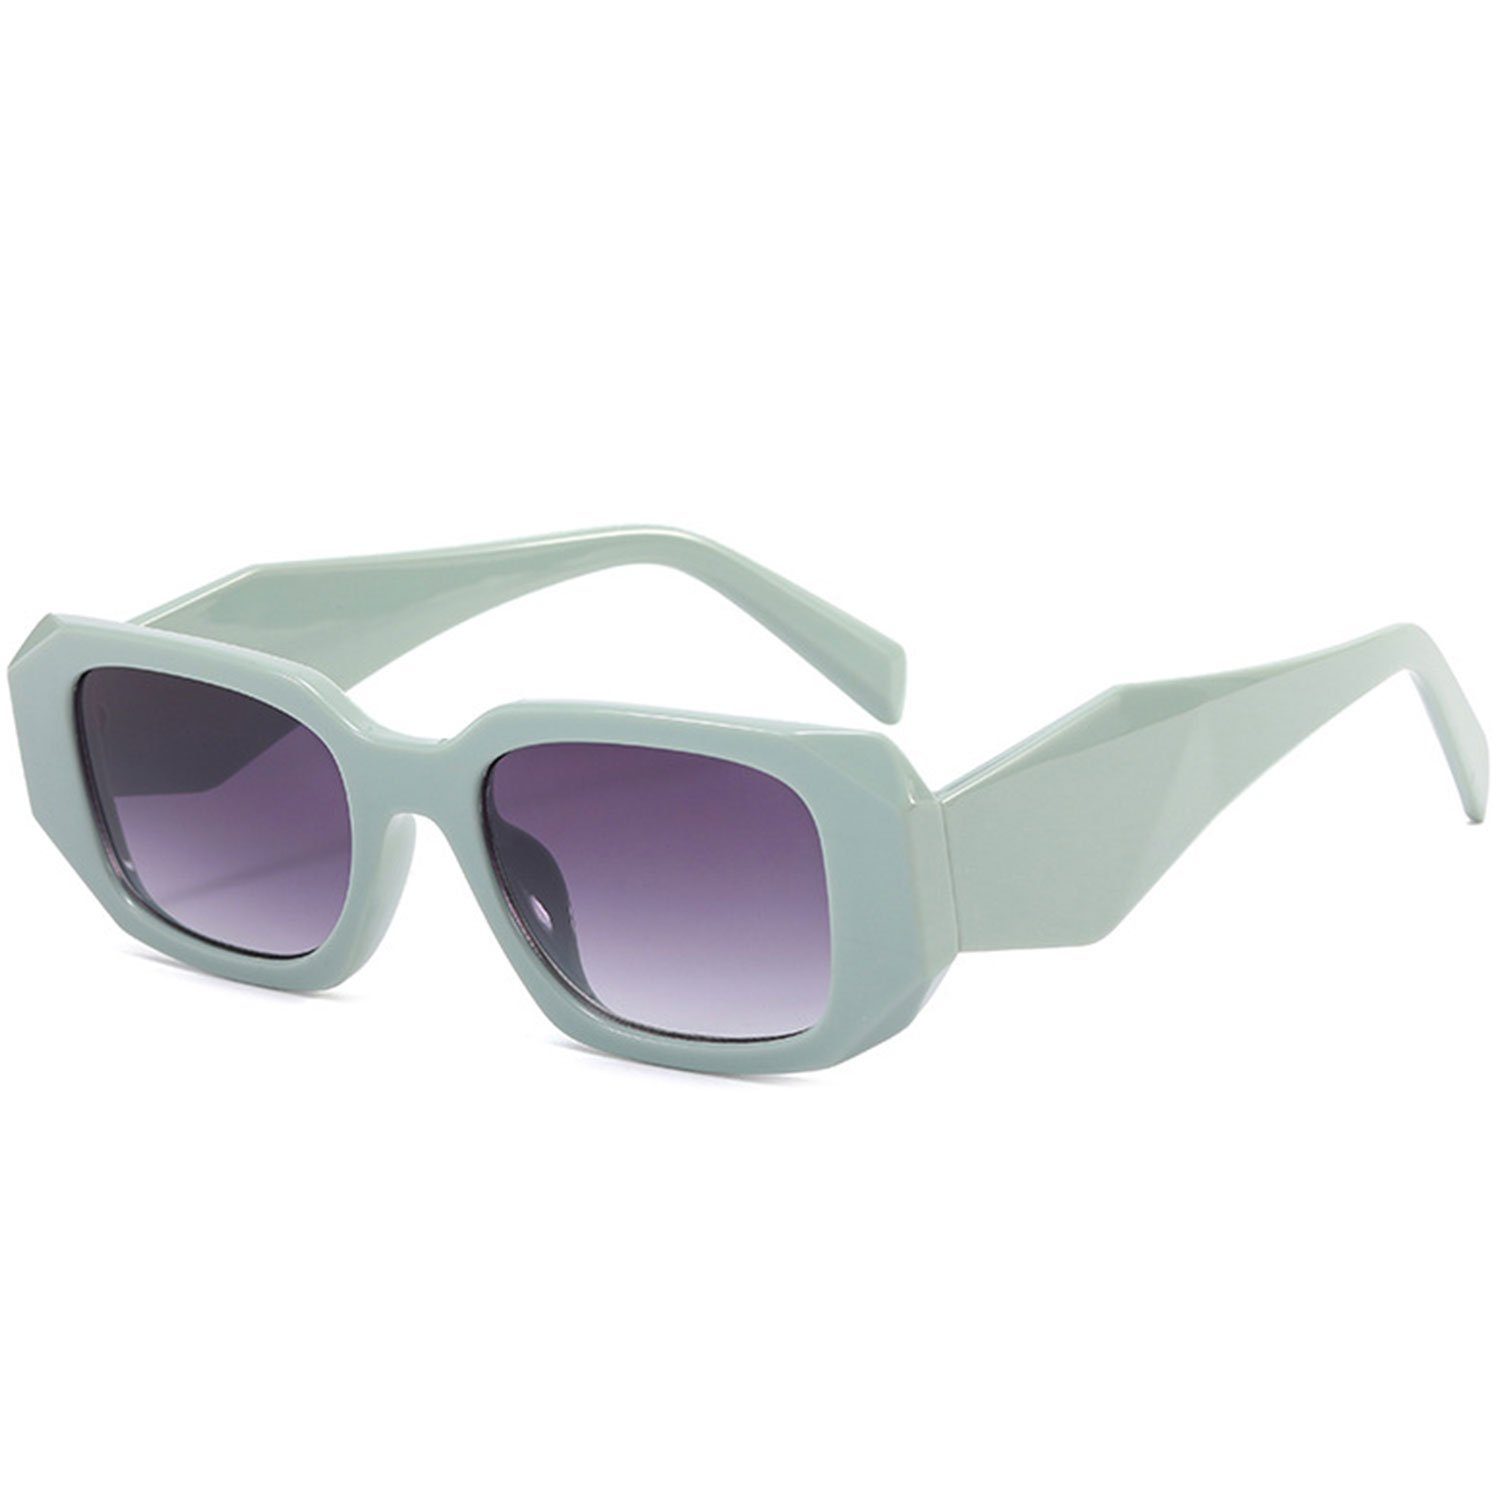 MAGICSHE Sonnenbrille Rechteckige Sonnenbrillen für Damen und Herren Retro Mode UV beständige Sonnenbrille Grüner Kasten